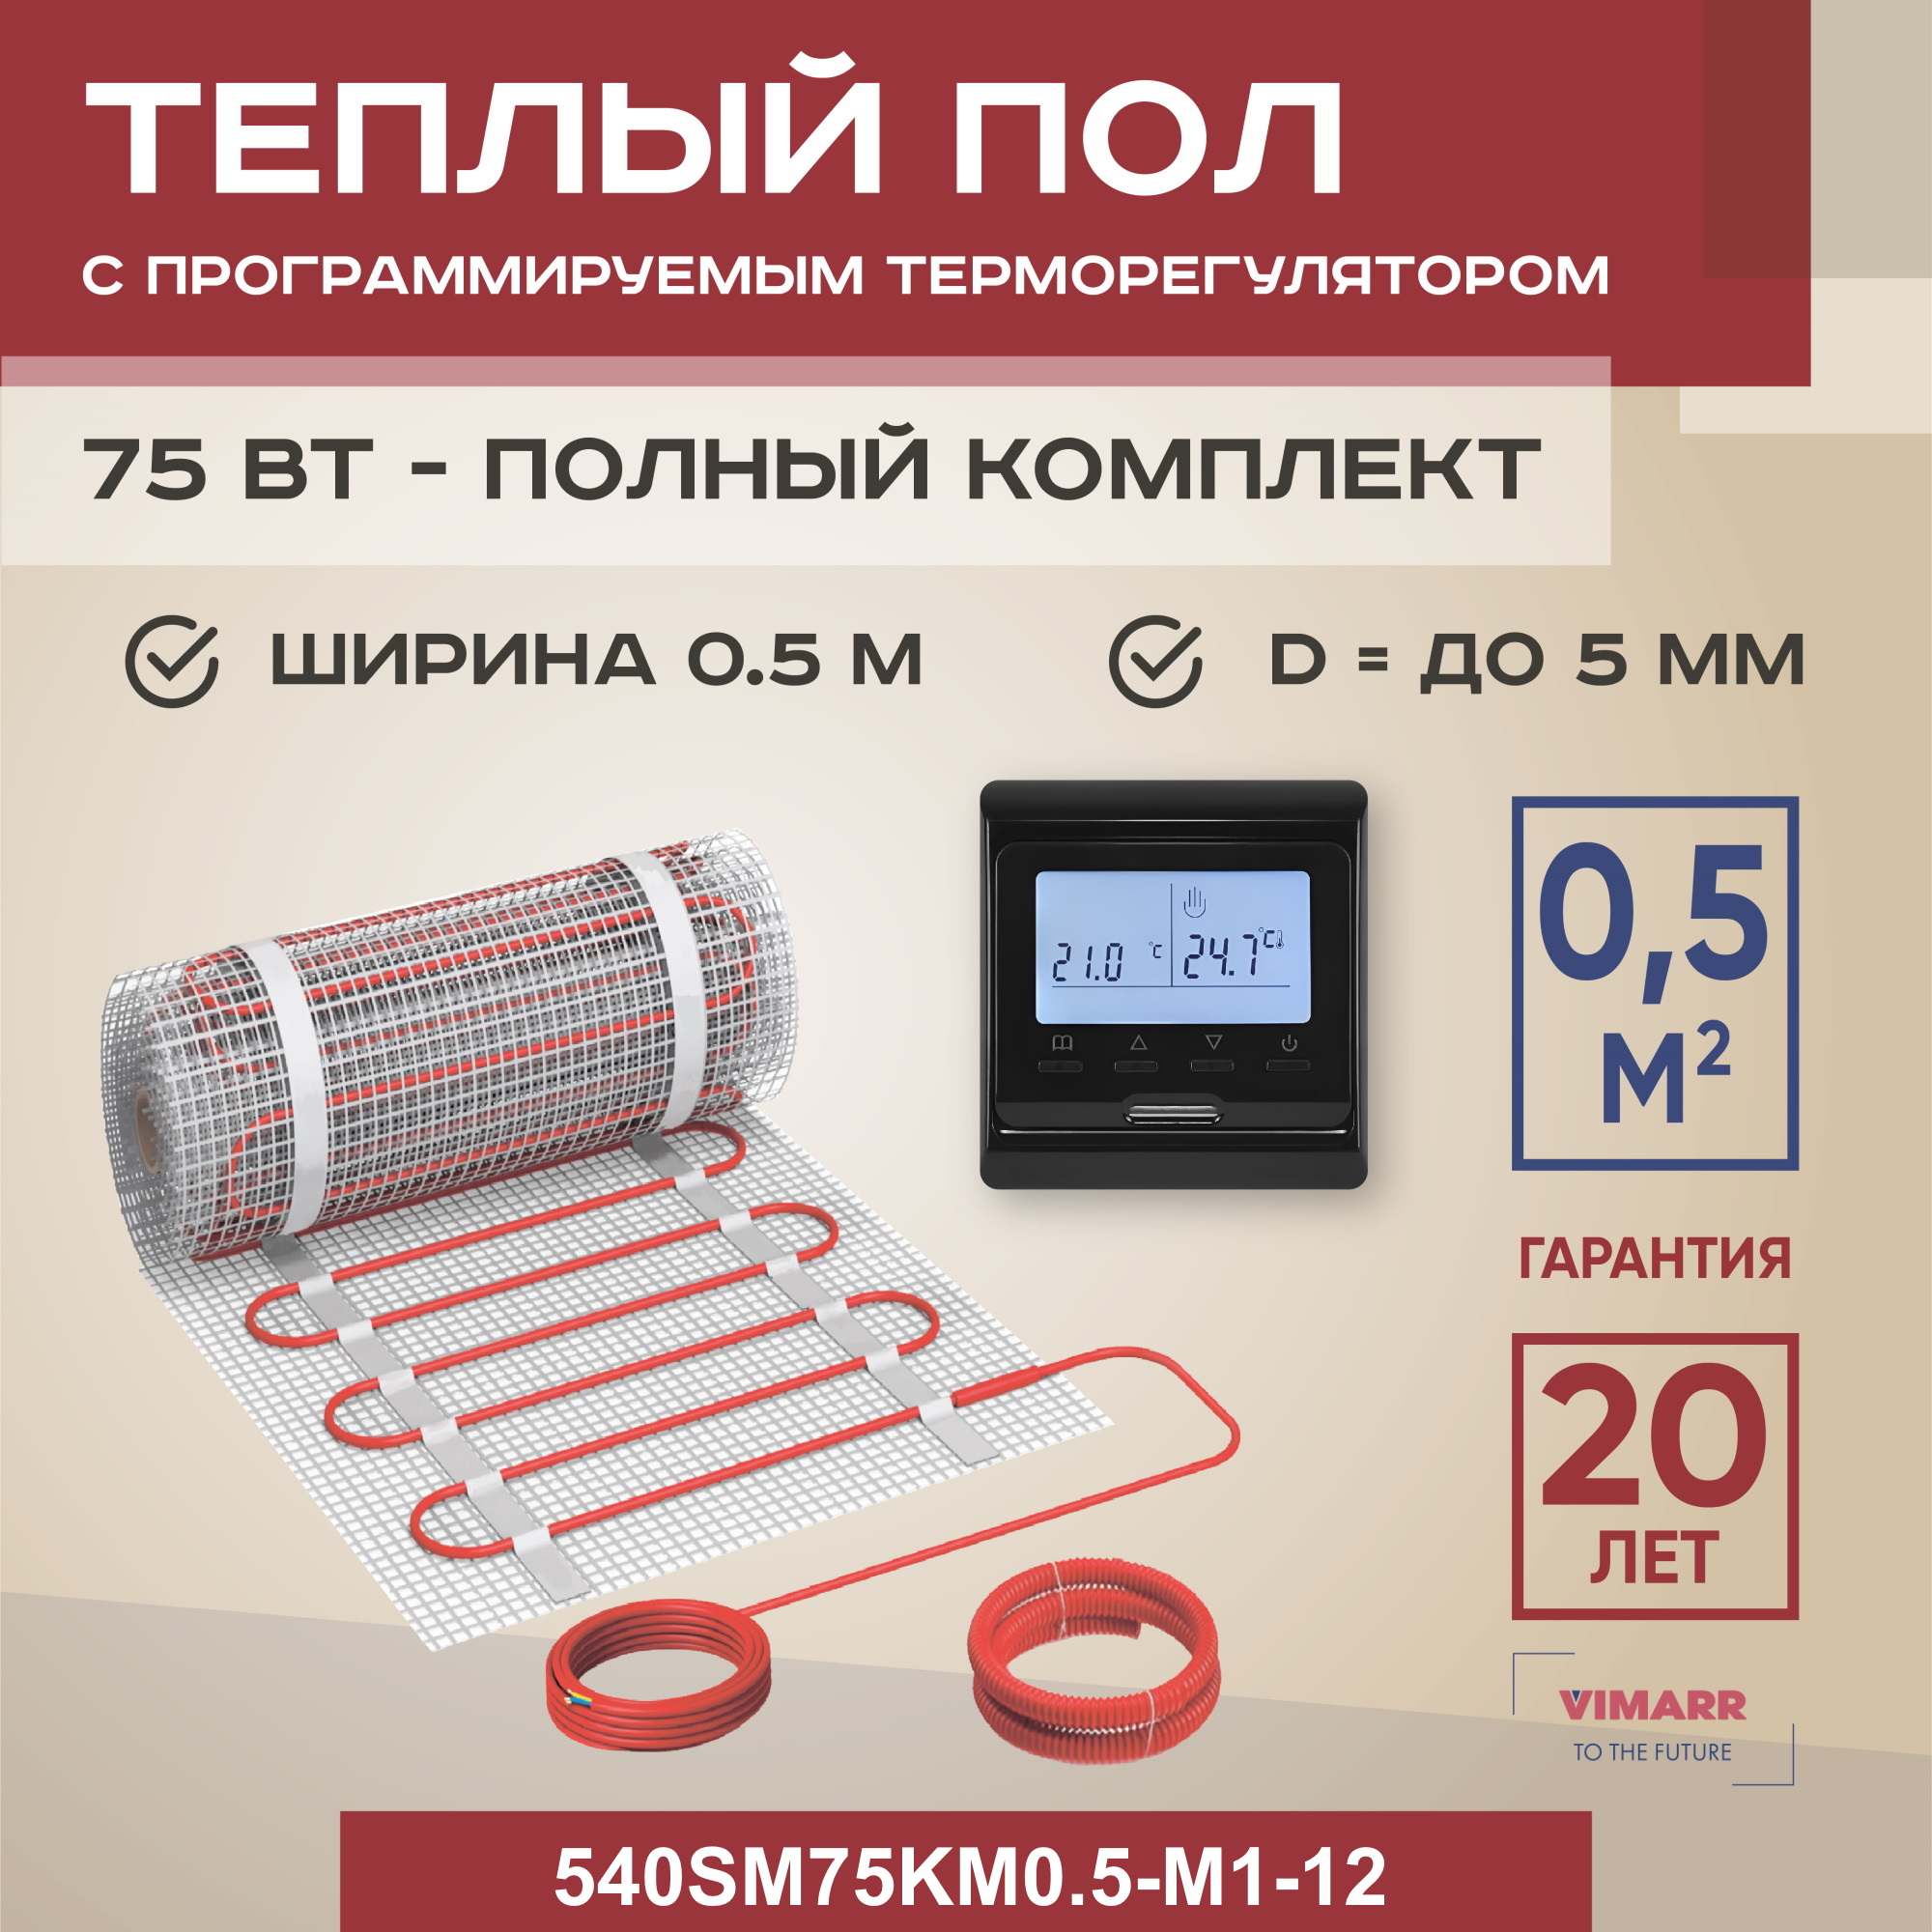 Теплый пол Vimarr SM 0.5 м2 75 Вт с черным программируемым терморегулятором